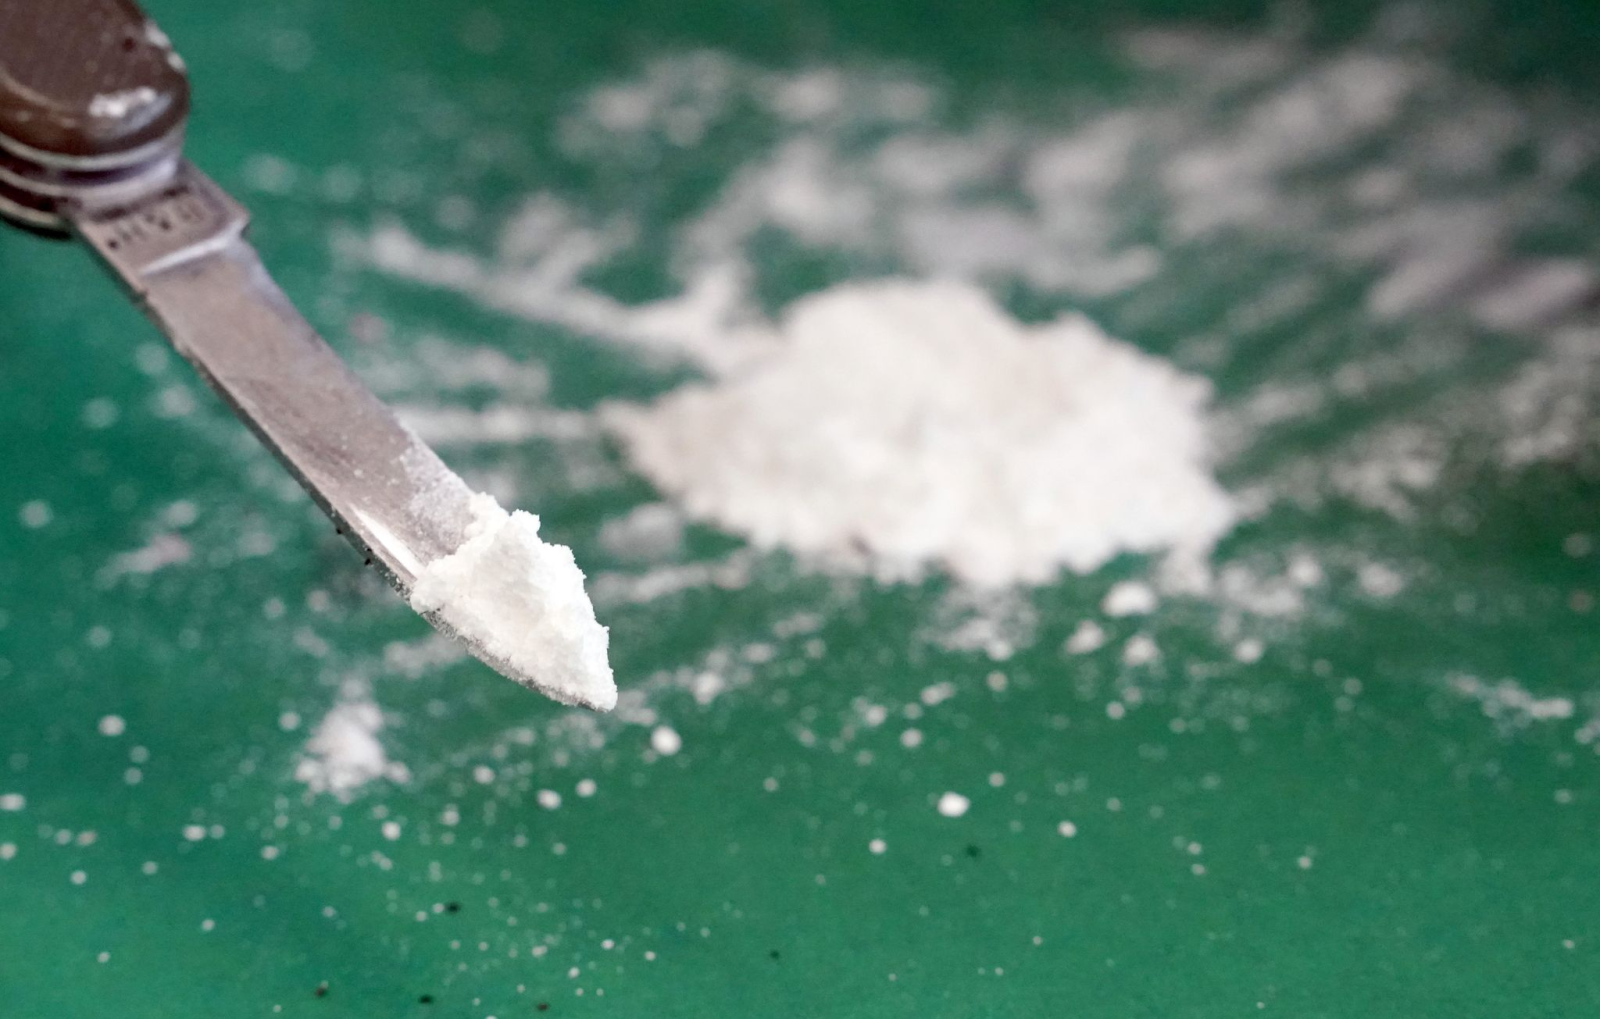 Vom Zoll sichergestelltes Kokain auf der Spitze eines Taschenmessers.